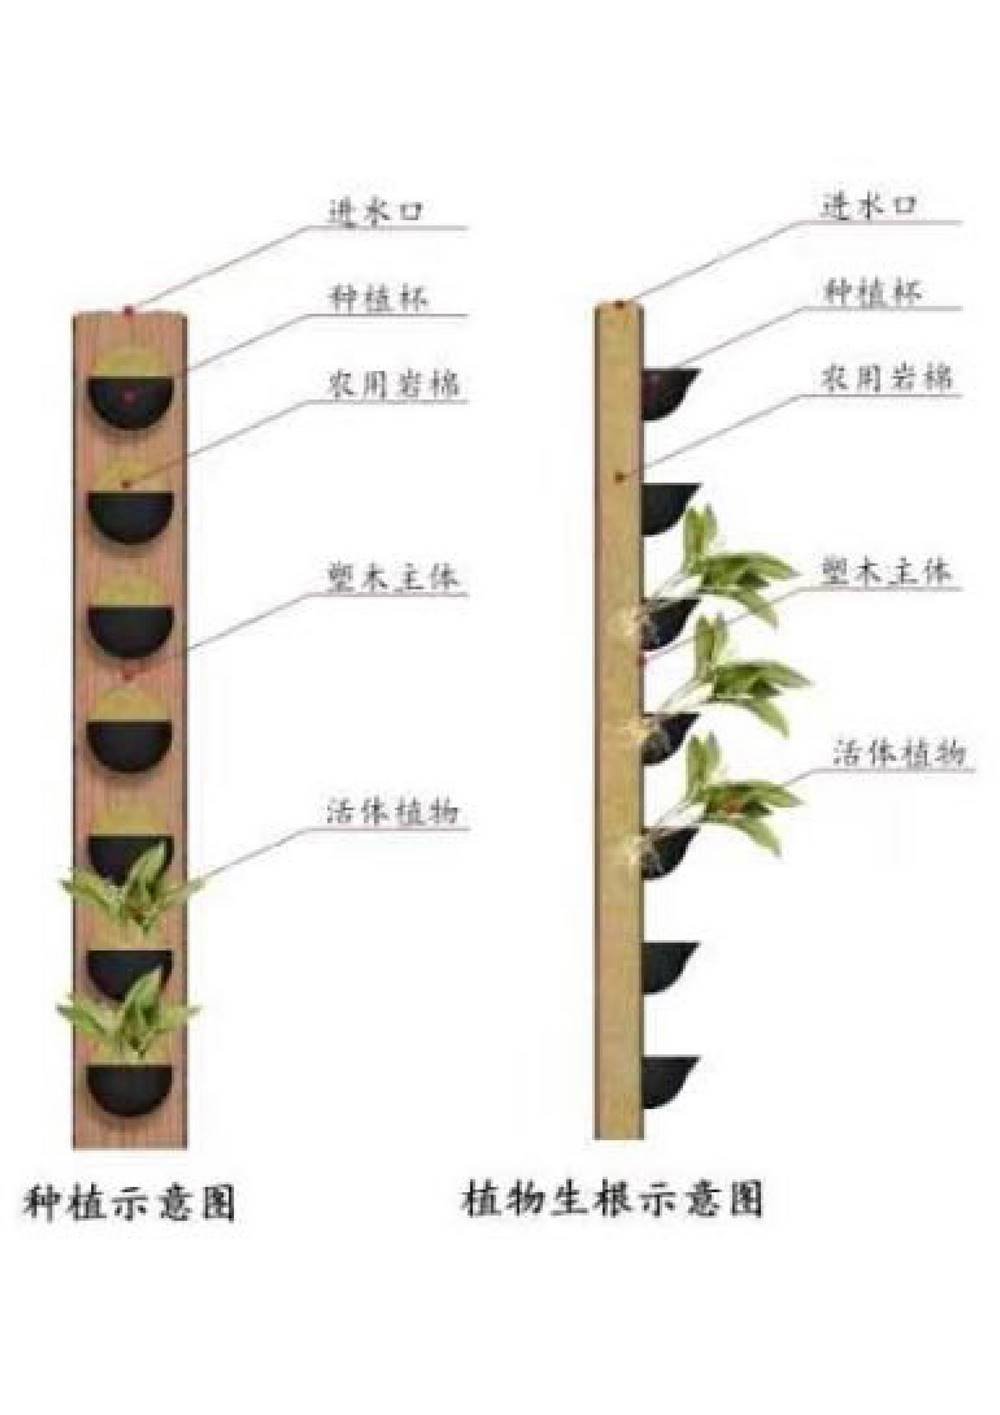 塑木通道式+岩棉植物墙容器介绍1_2.jpg